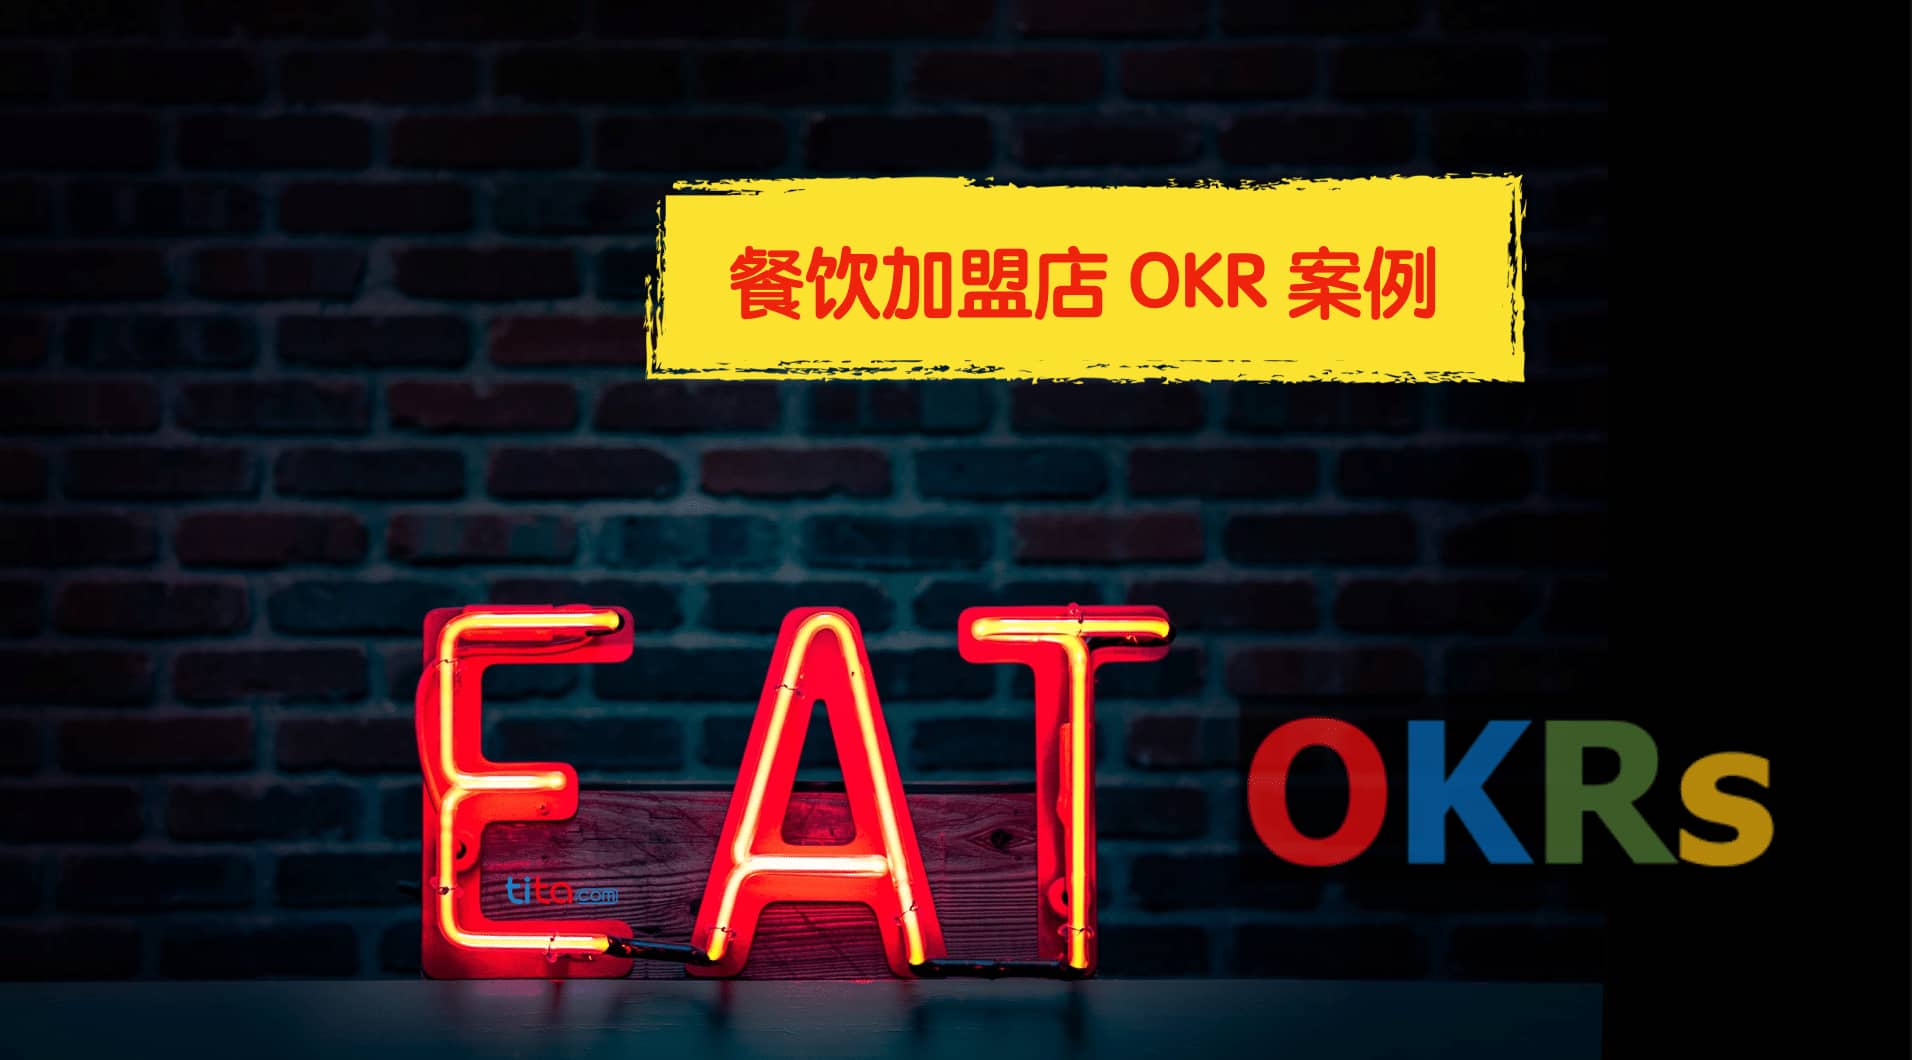 餐馆加盟店的 OKR 案例